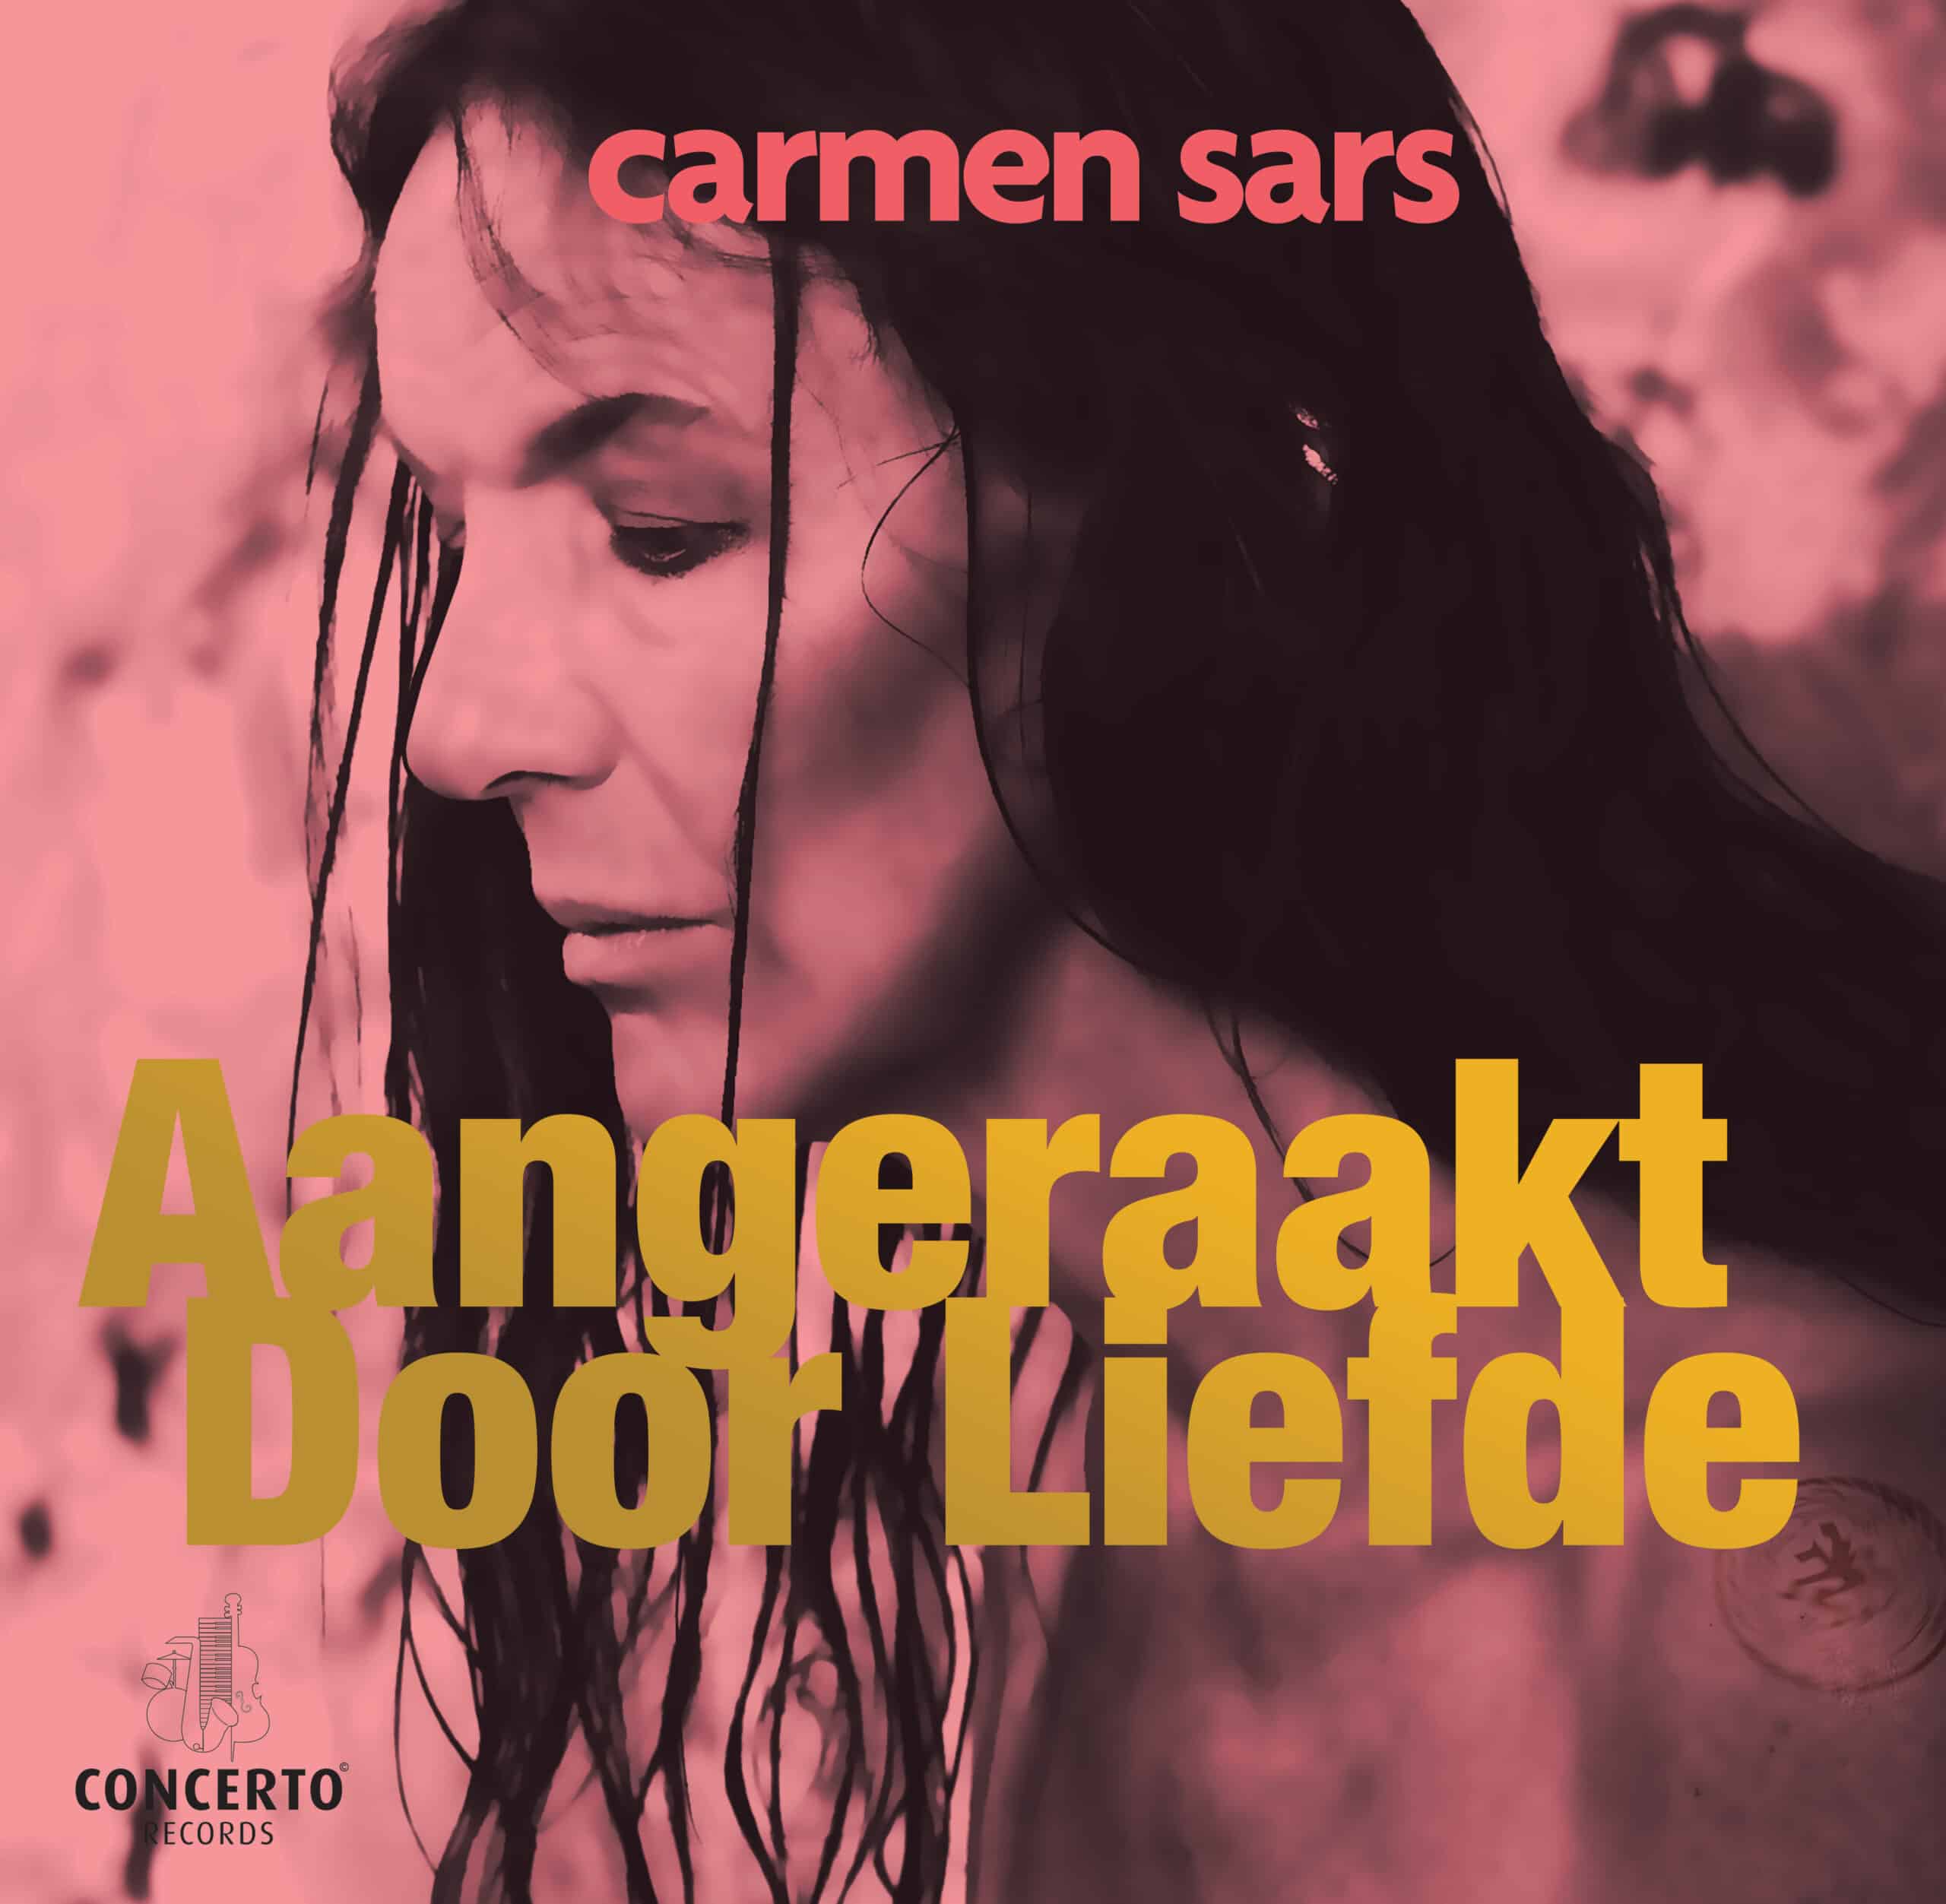 Nieuwste Jazzy album Carmen Sars uit